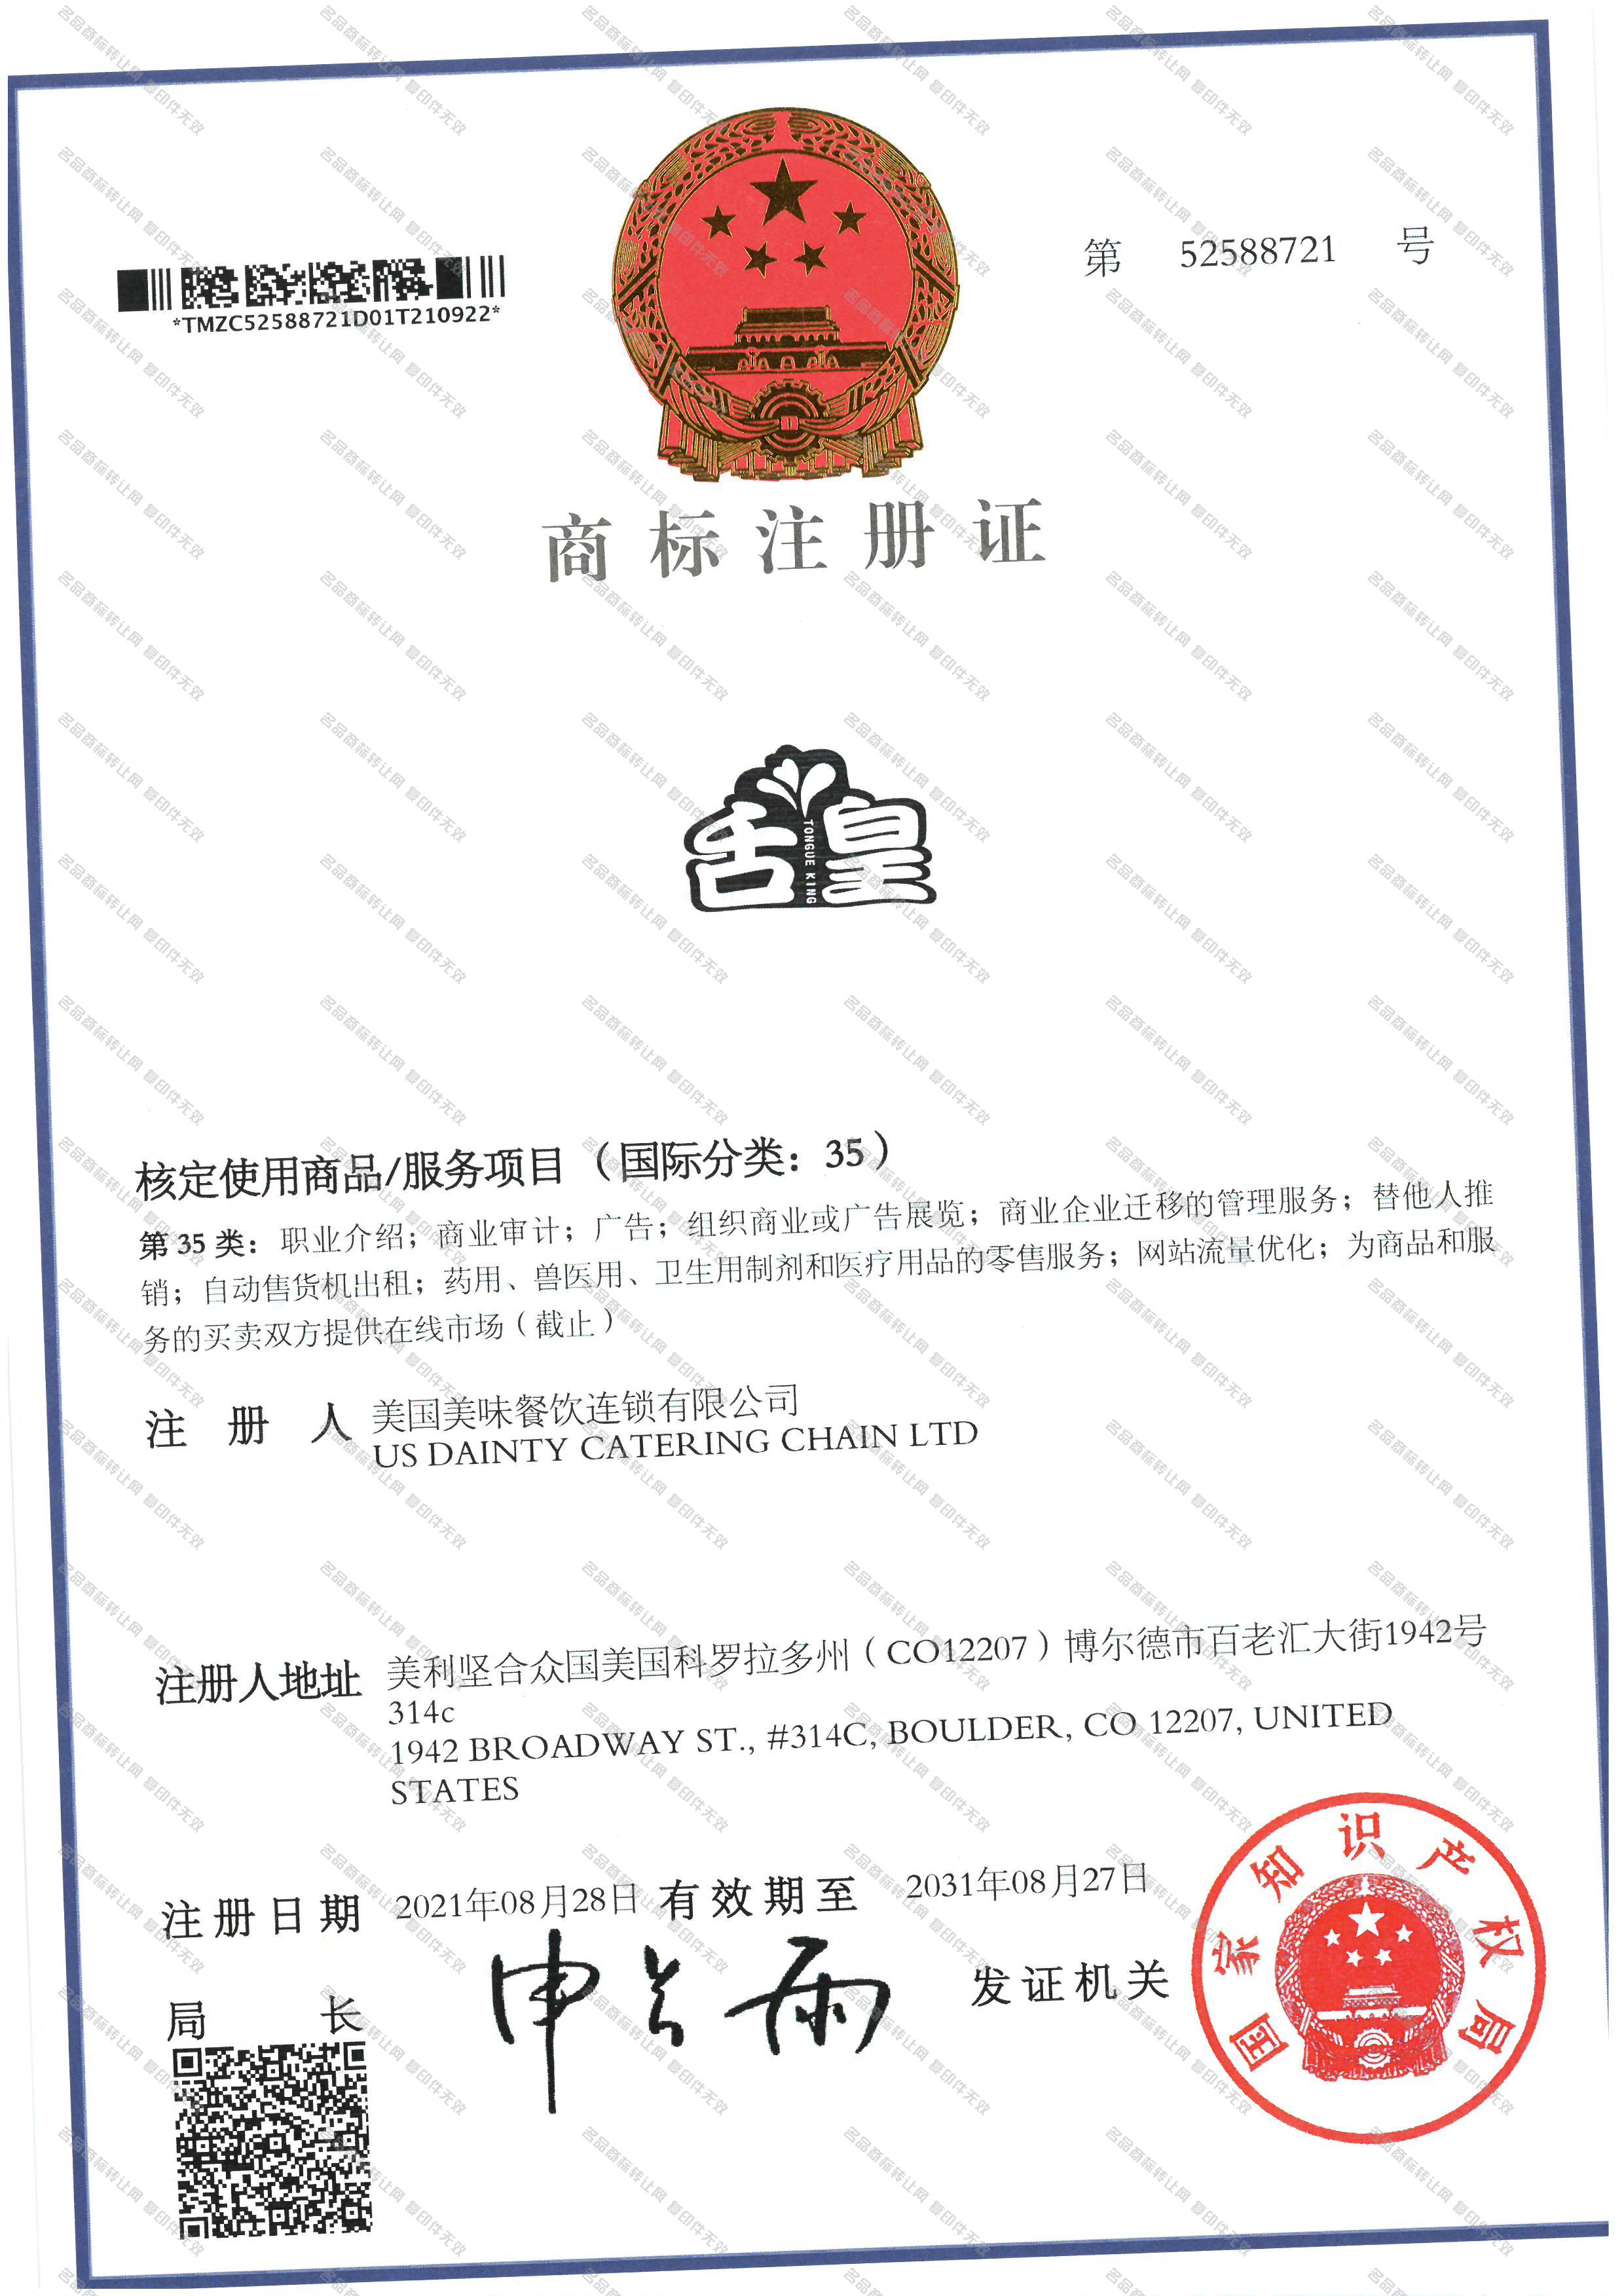 舌皇 TONGUE KING注册证